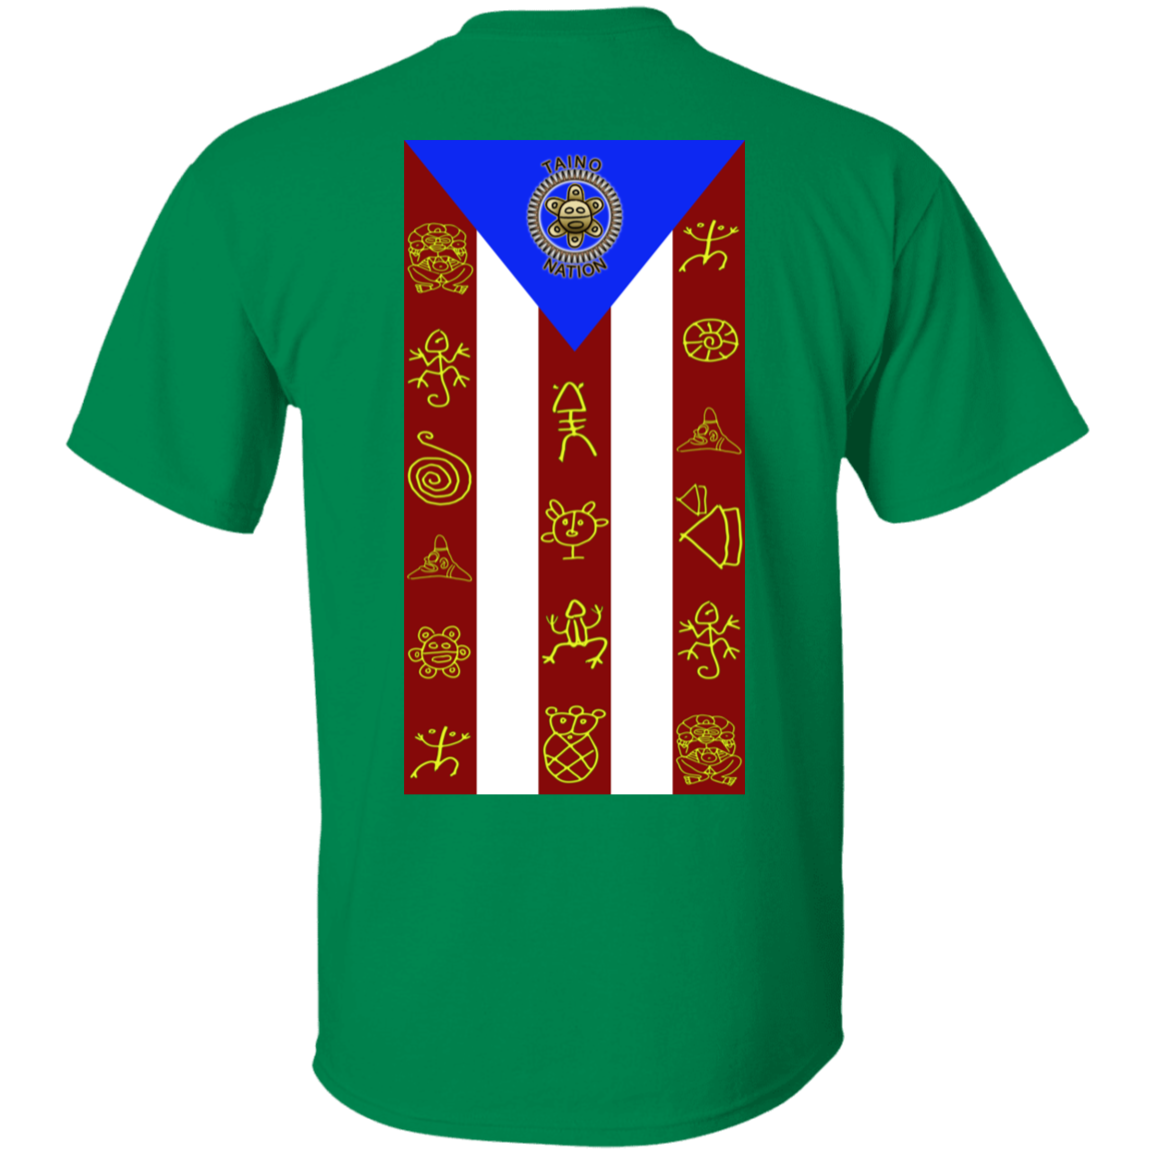 Taino Nation Flag/Emblem 5.3 oz. T-Shirt